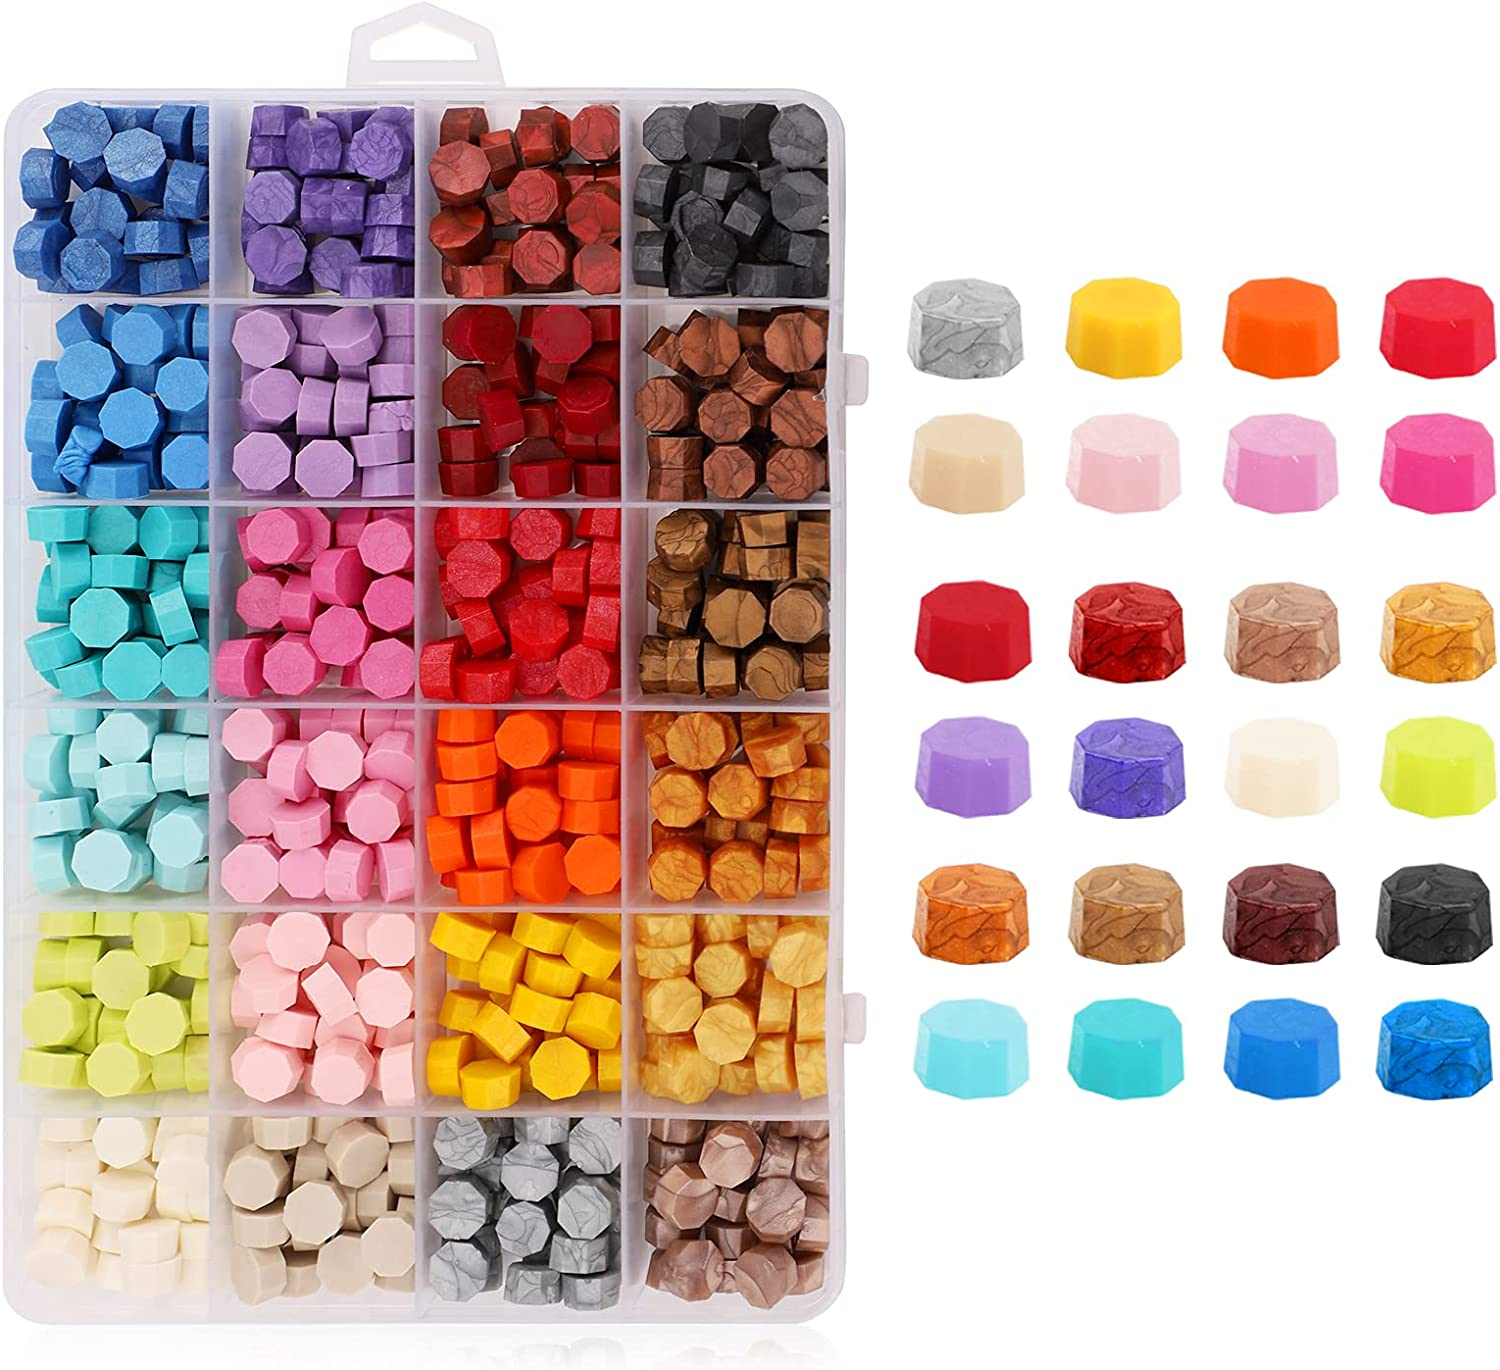 Hermeta Uusi tuote: Wax Seal -sarja värikkään maailman luomiseksi